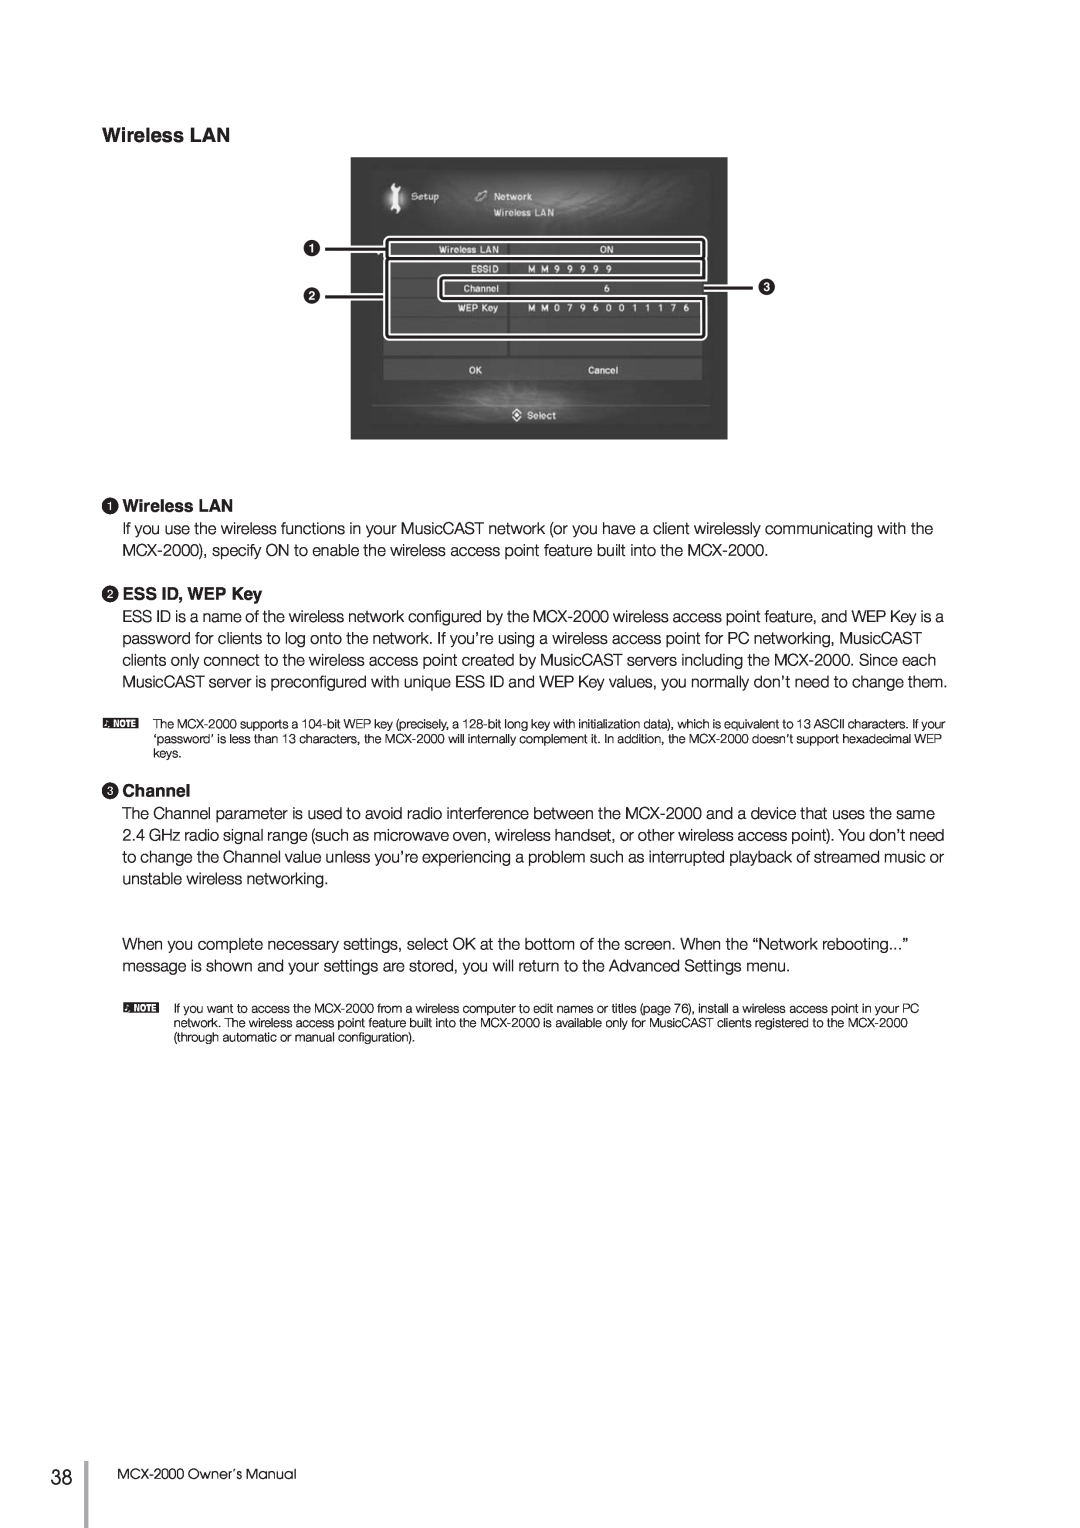 Yamaha MCX-2000 setup guide 1Wireless LAN, 2ESS ID, WEP Key, 3Channel 